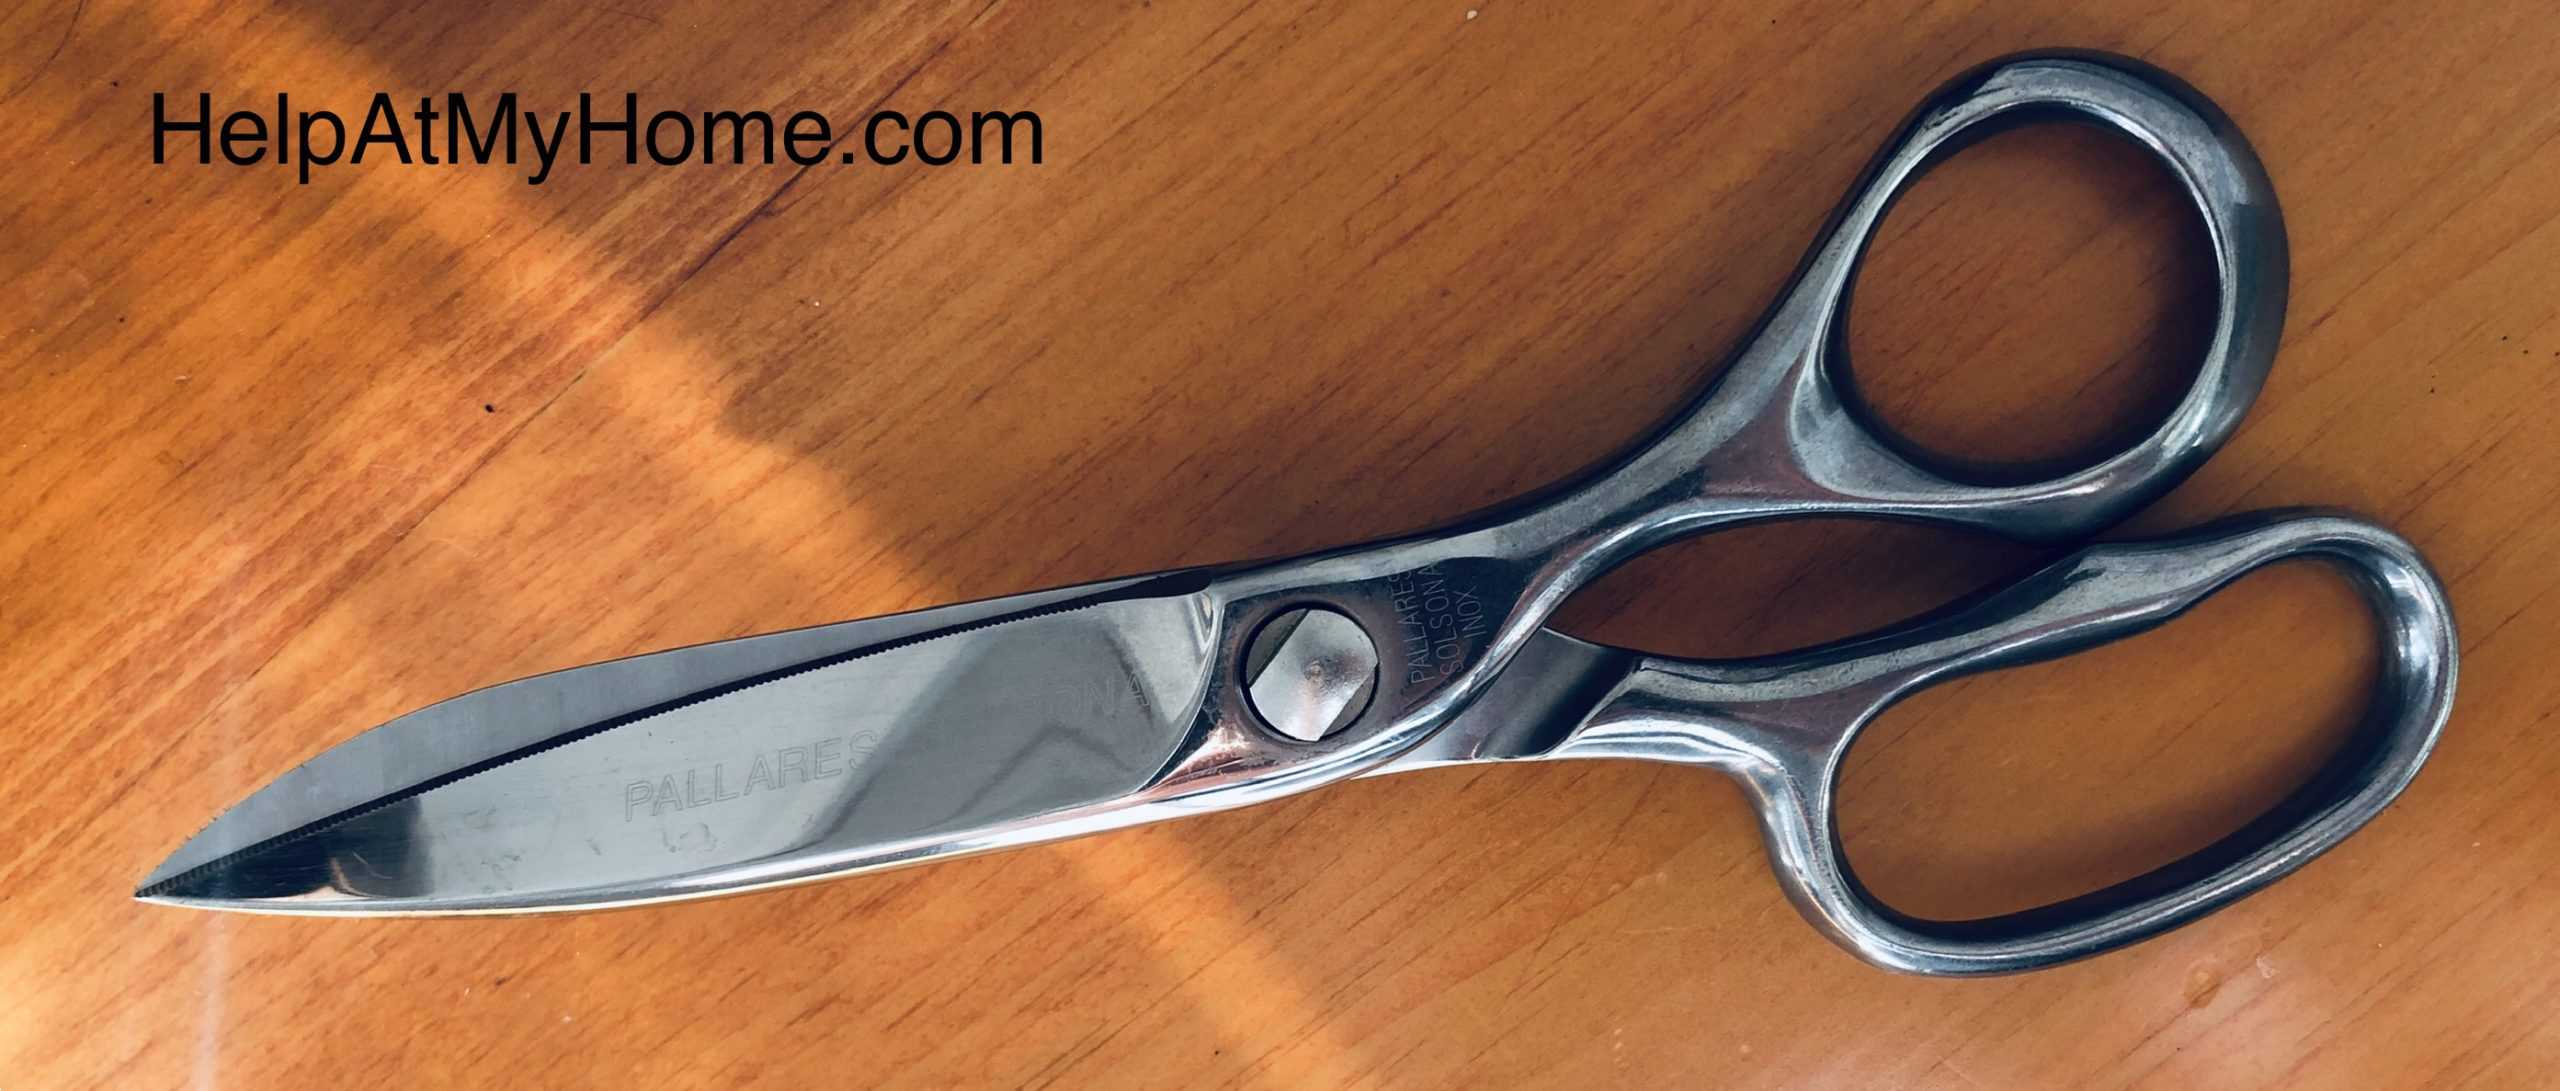 Fiskars Left-Handed Scissors - 8